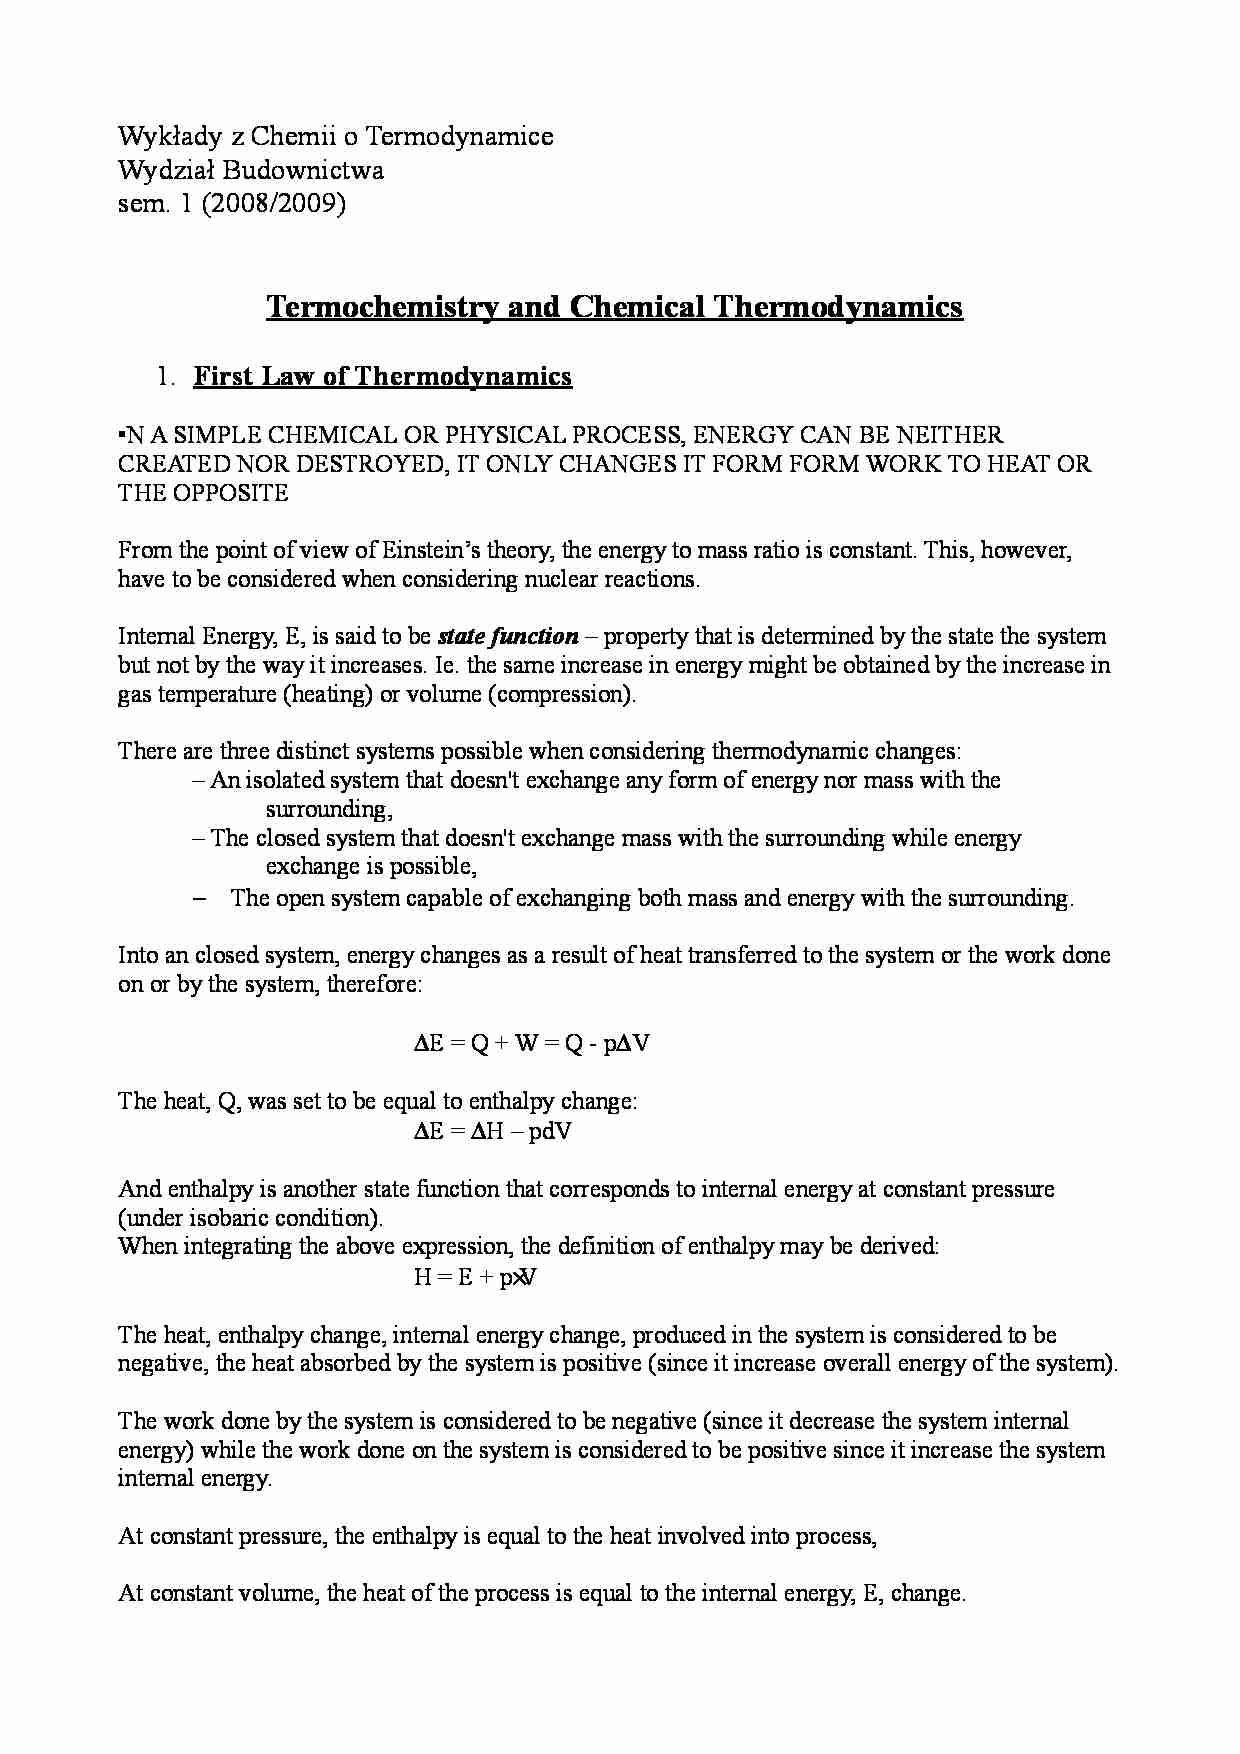 wykłady z chemii: termodynamika (wersja angielska) - strona 1